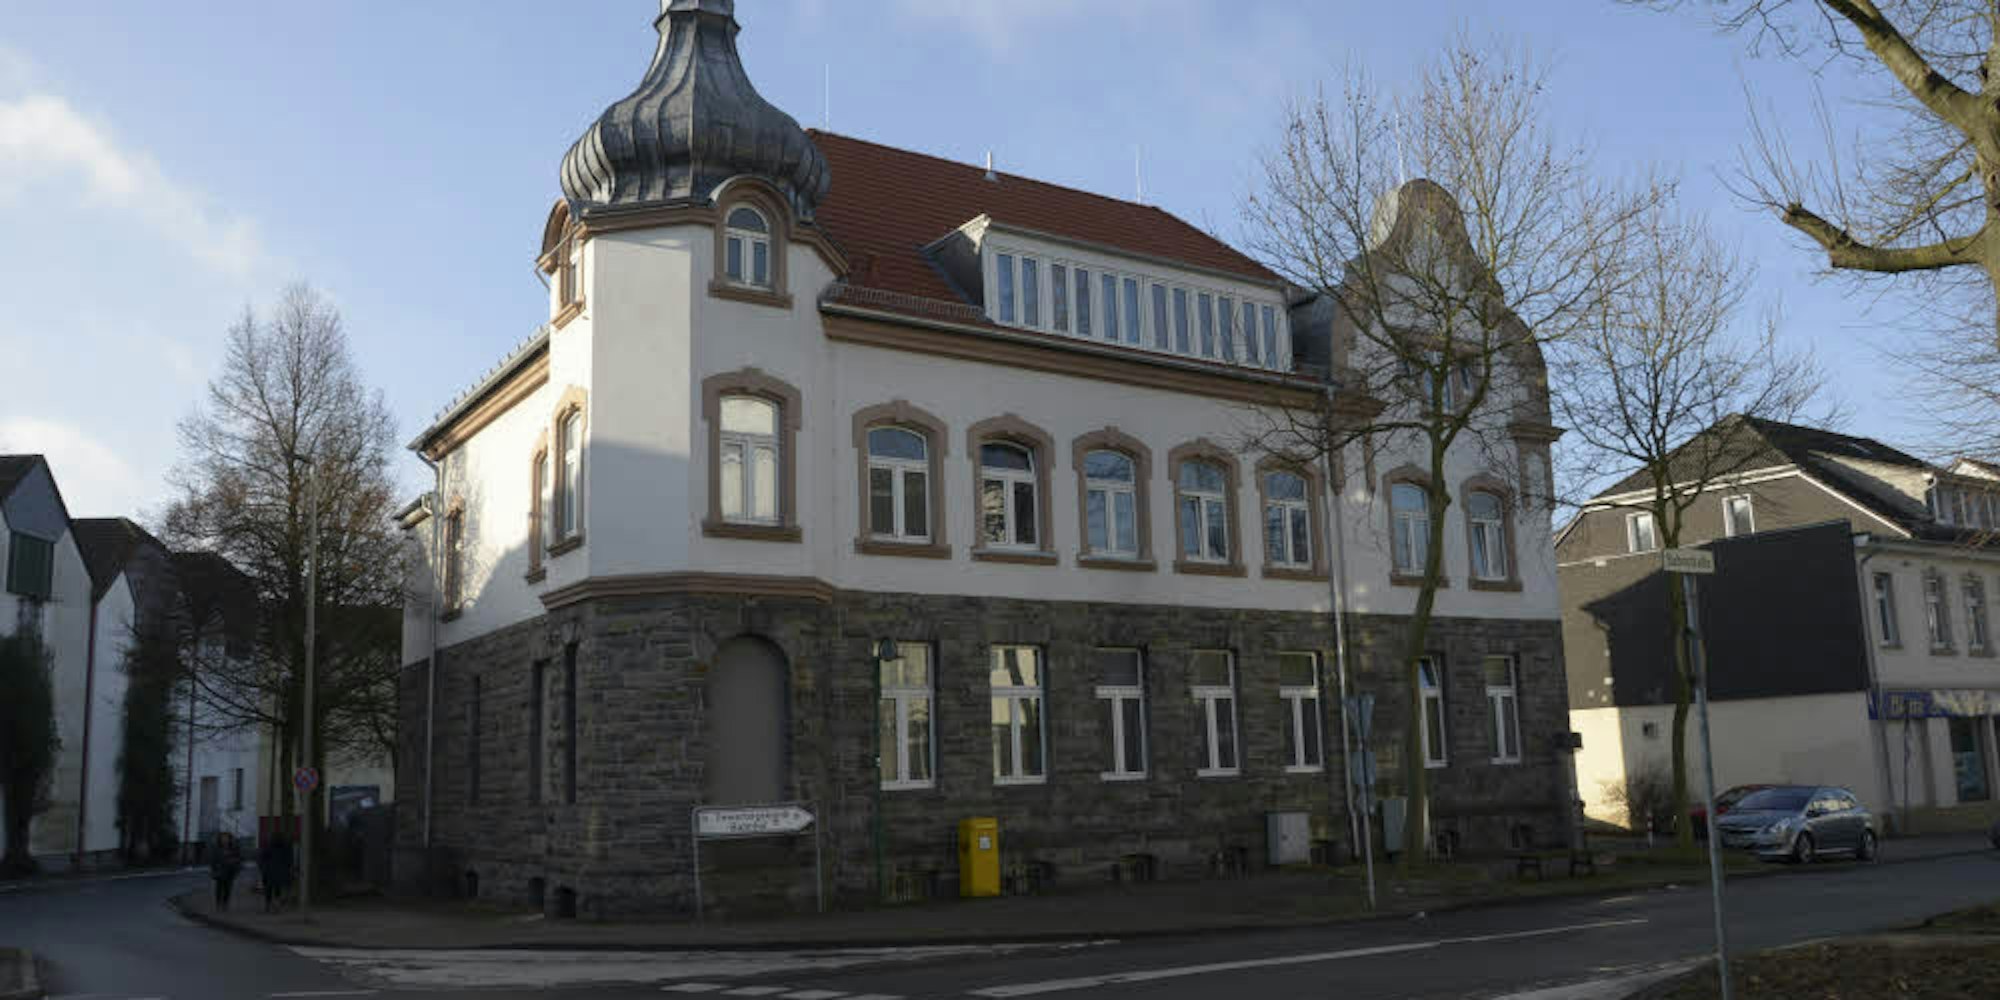 Derzeit dient die Alte Post als Übergangswohnheim für Flüchtlinge.